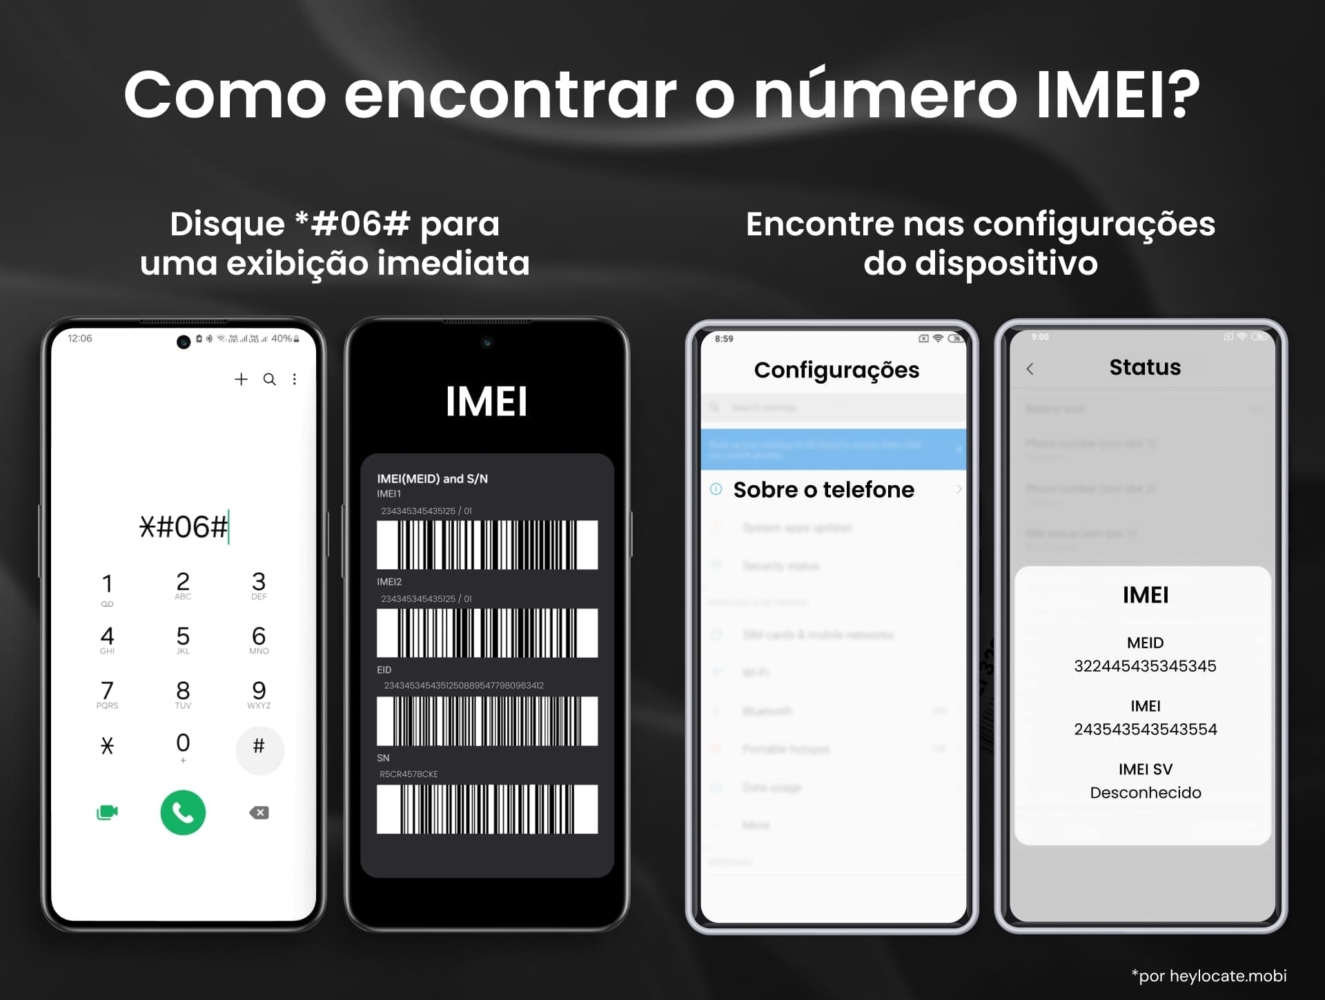 Um guia gráfico sobre como encontrar um número IMEI em um telefone celular. Inclui três métodos: discando *#06#, verificando o IMEI nas configurações do telefone em "Sobre o telefone" e visualizando-o na seção "Status"